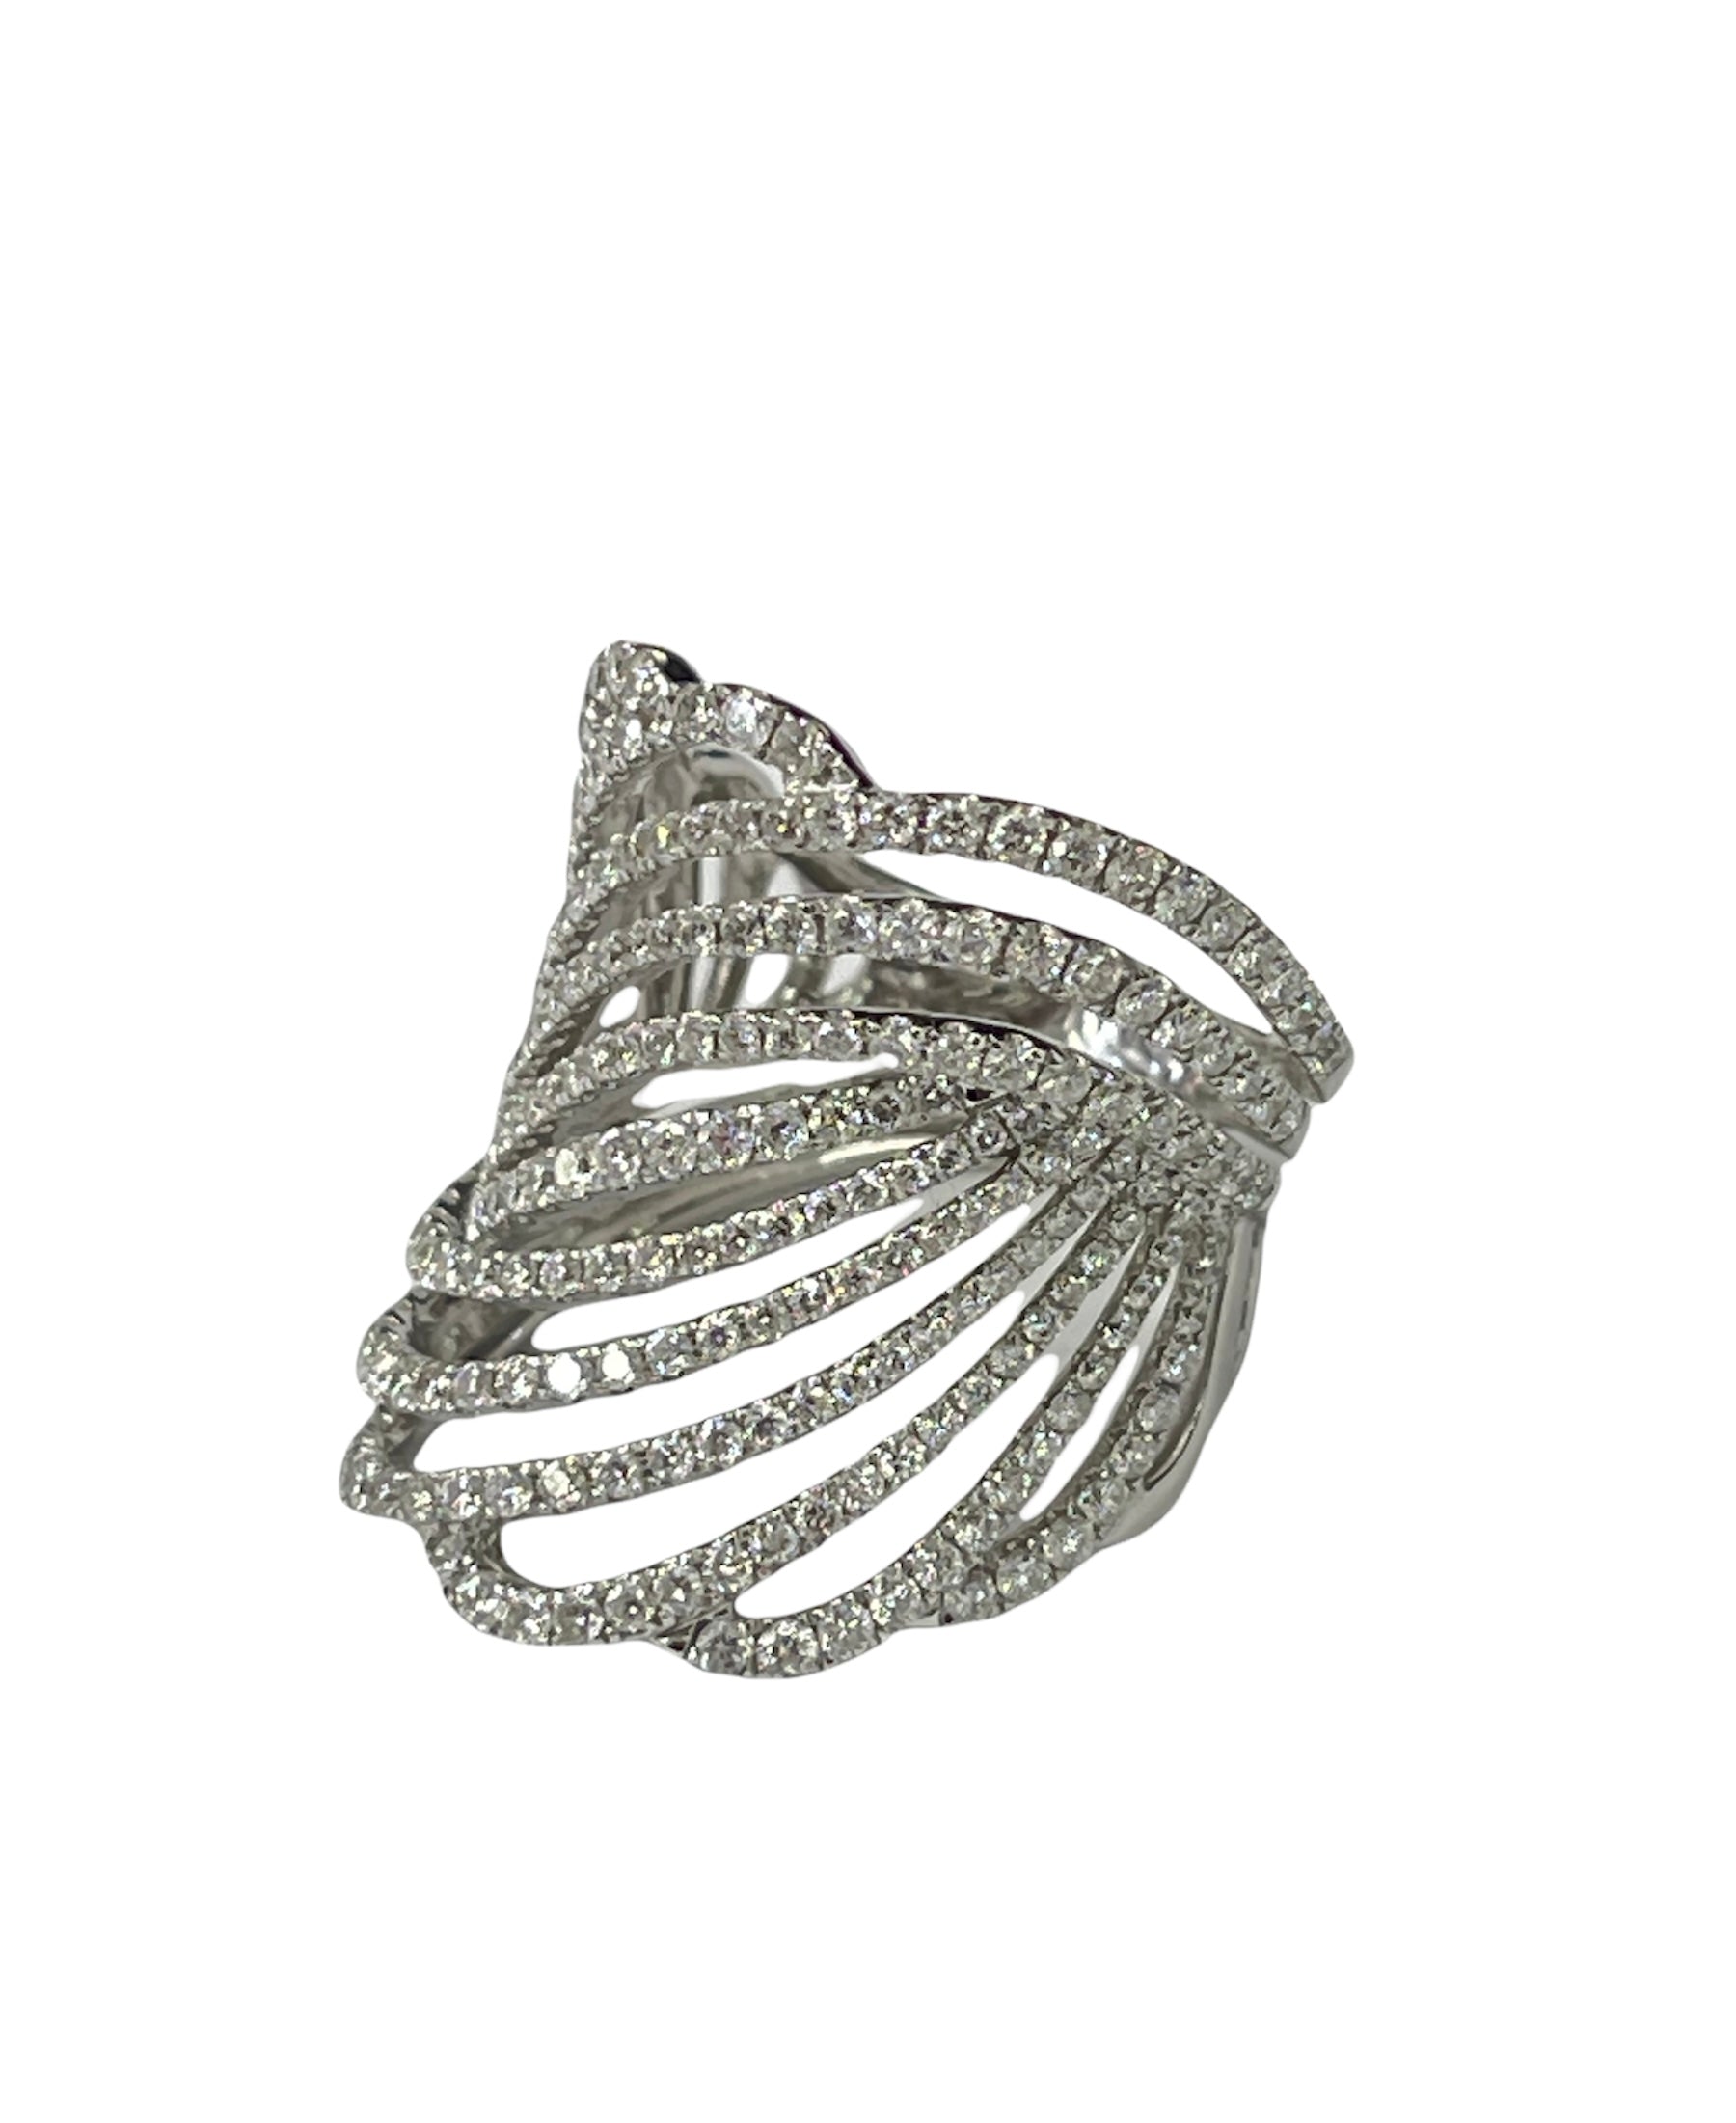 Tiara Diamond Ring With Round Brilliants White Gold 18kt